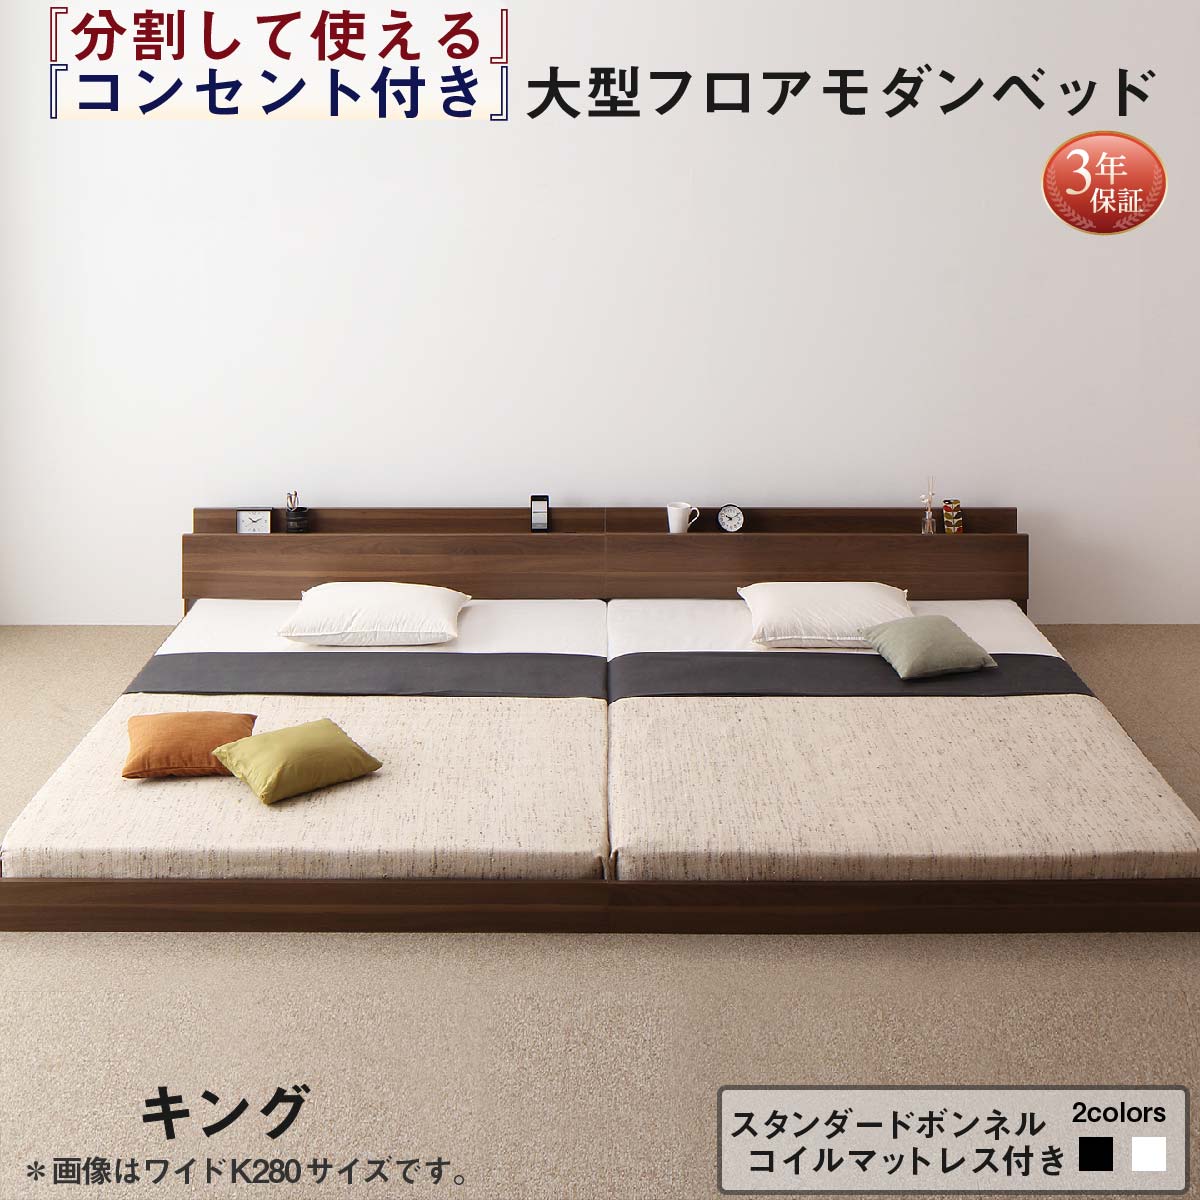 【楽天市場】ファミリーベッド 連結ベッド 大型ベッド ファミリー